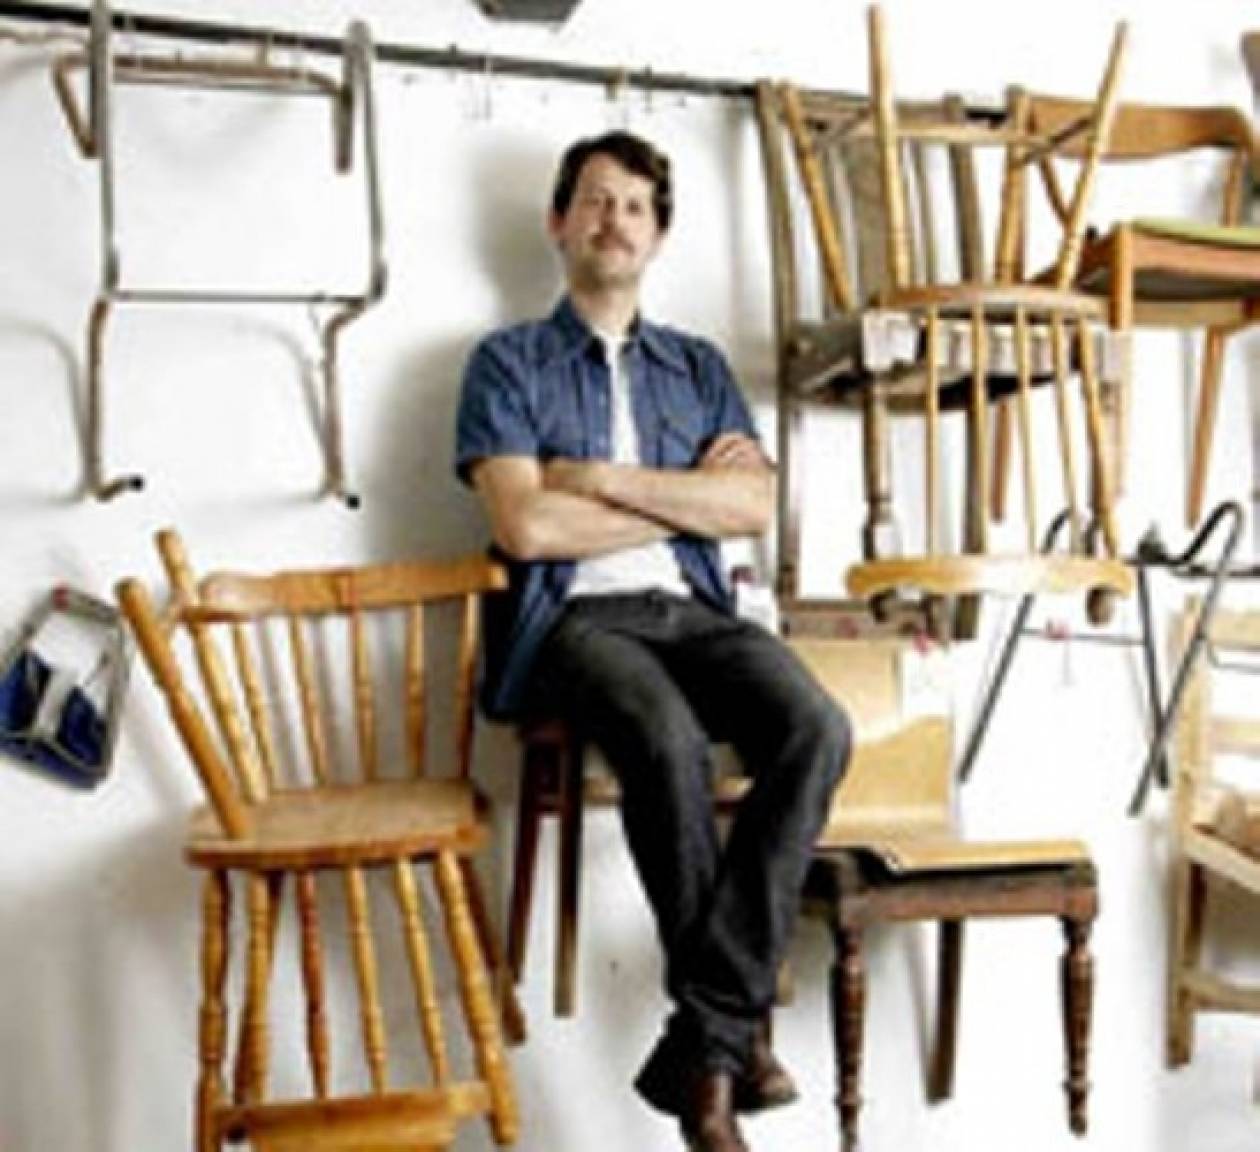 Εκατό καρέκλες σε 100 ημέρες από τον Ιταλό σχεδιαστή Μαρτίνο Γκάμπερ